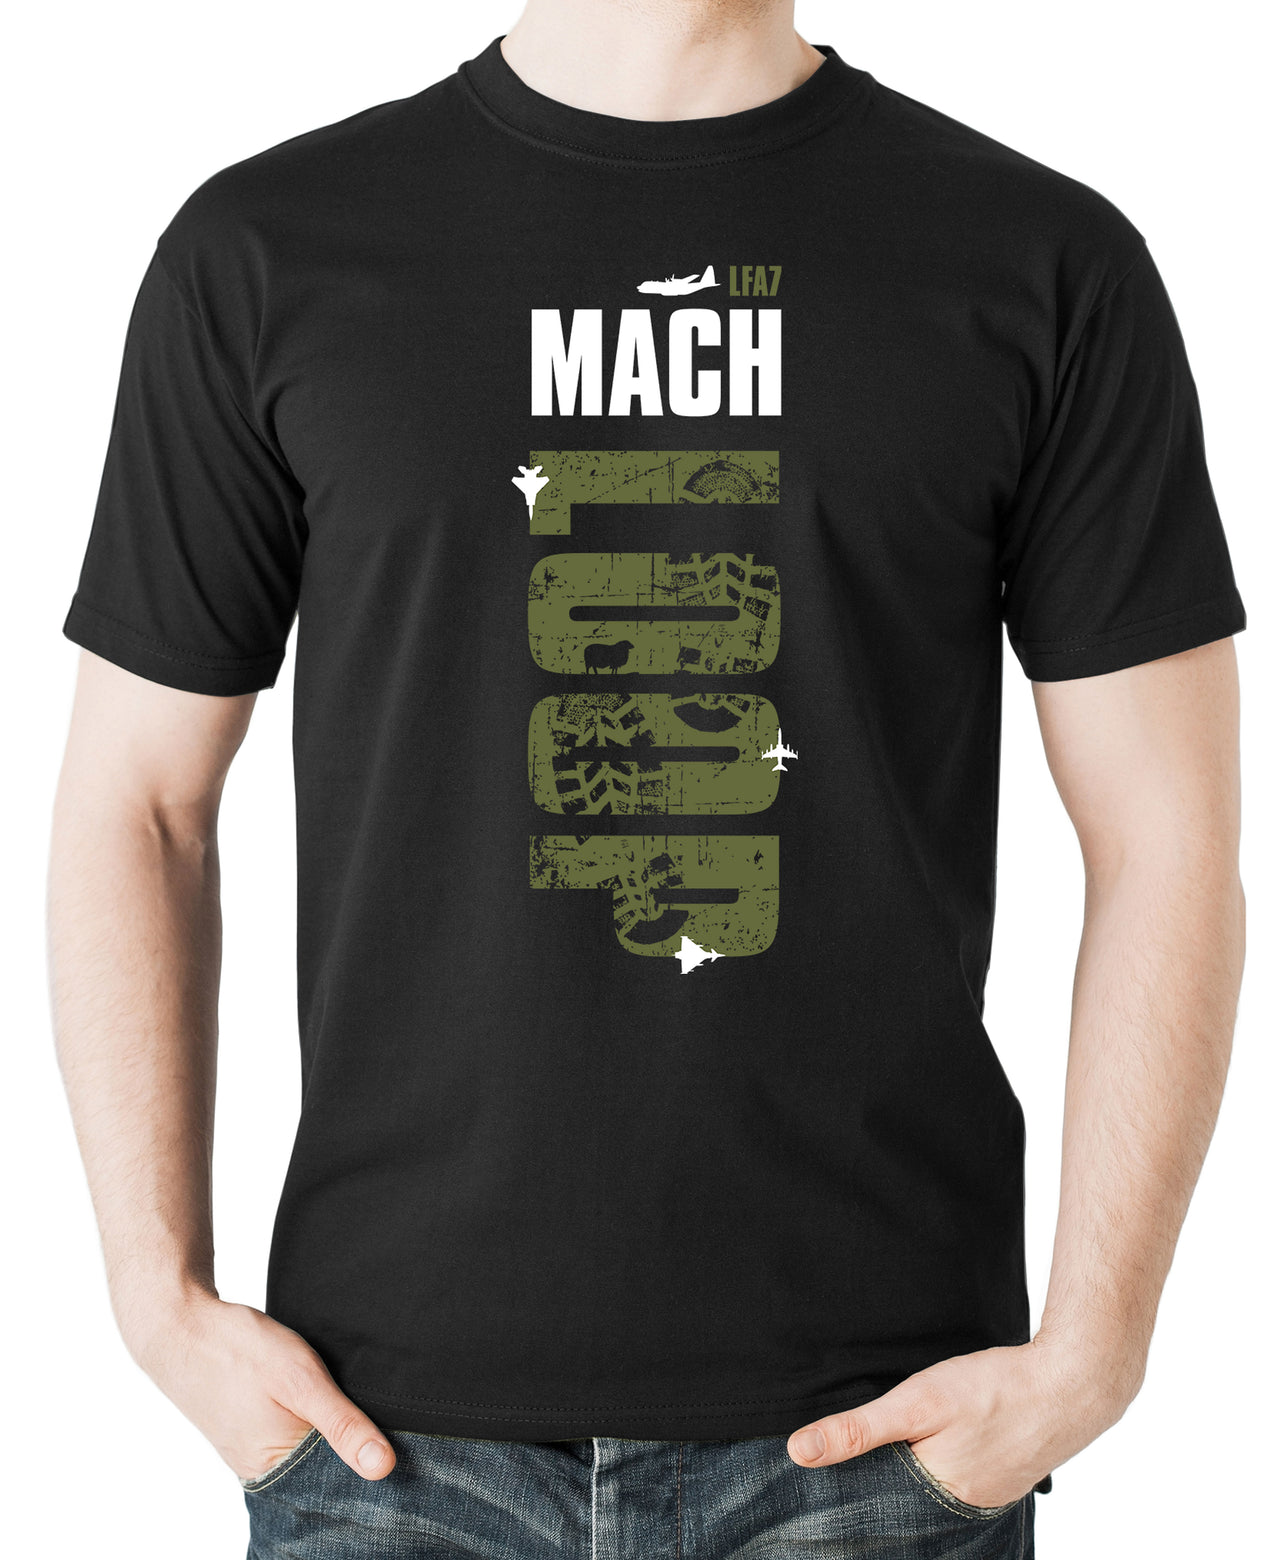 Mach Loop - T-shirt